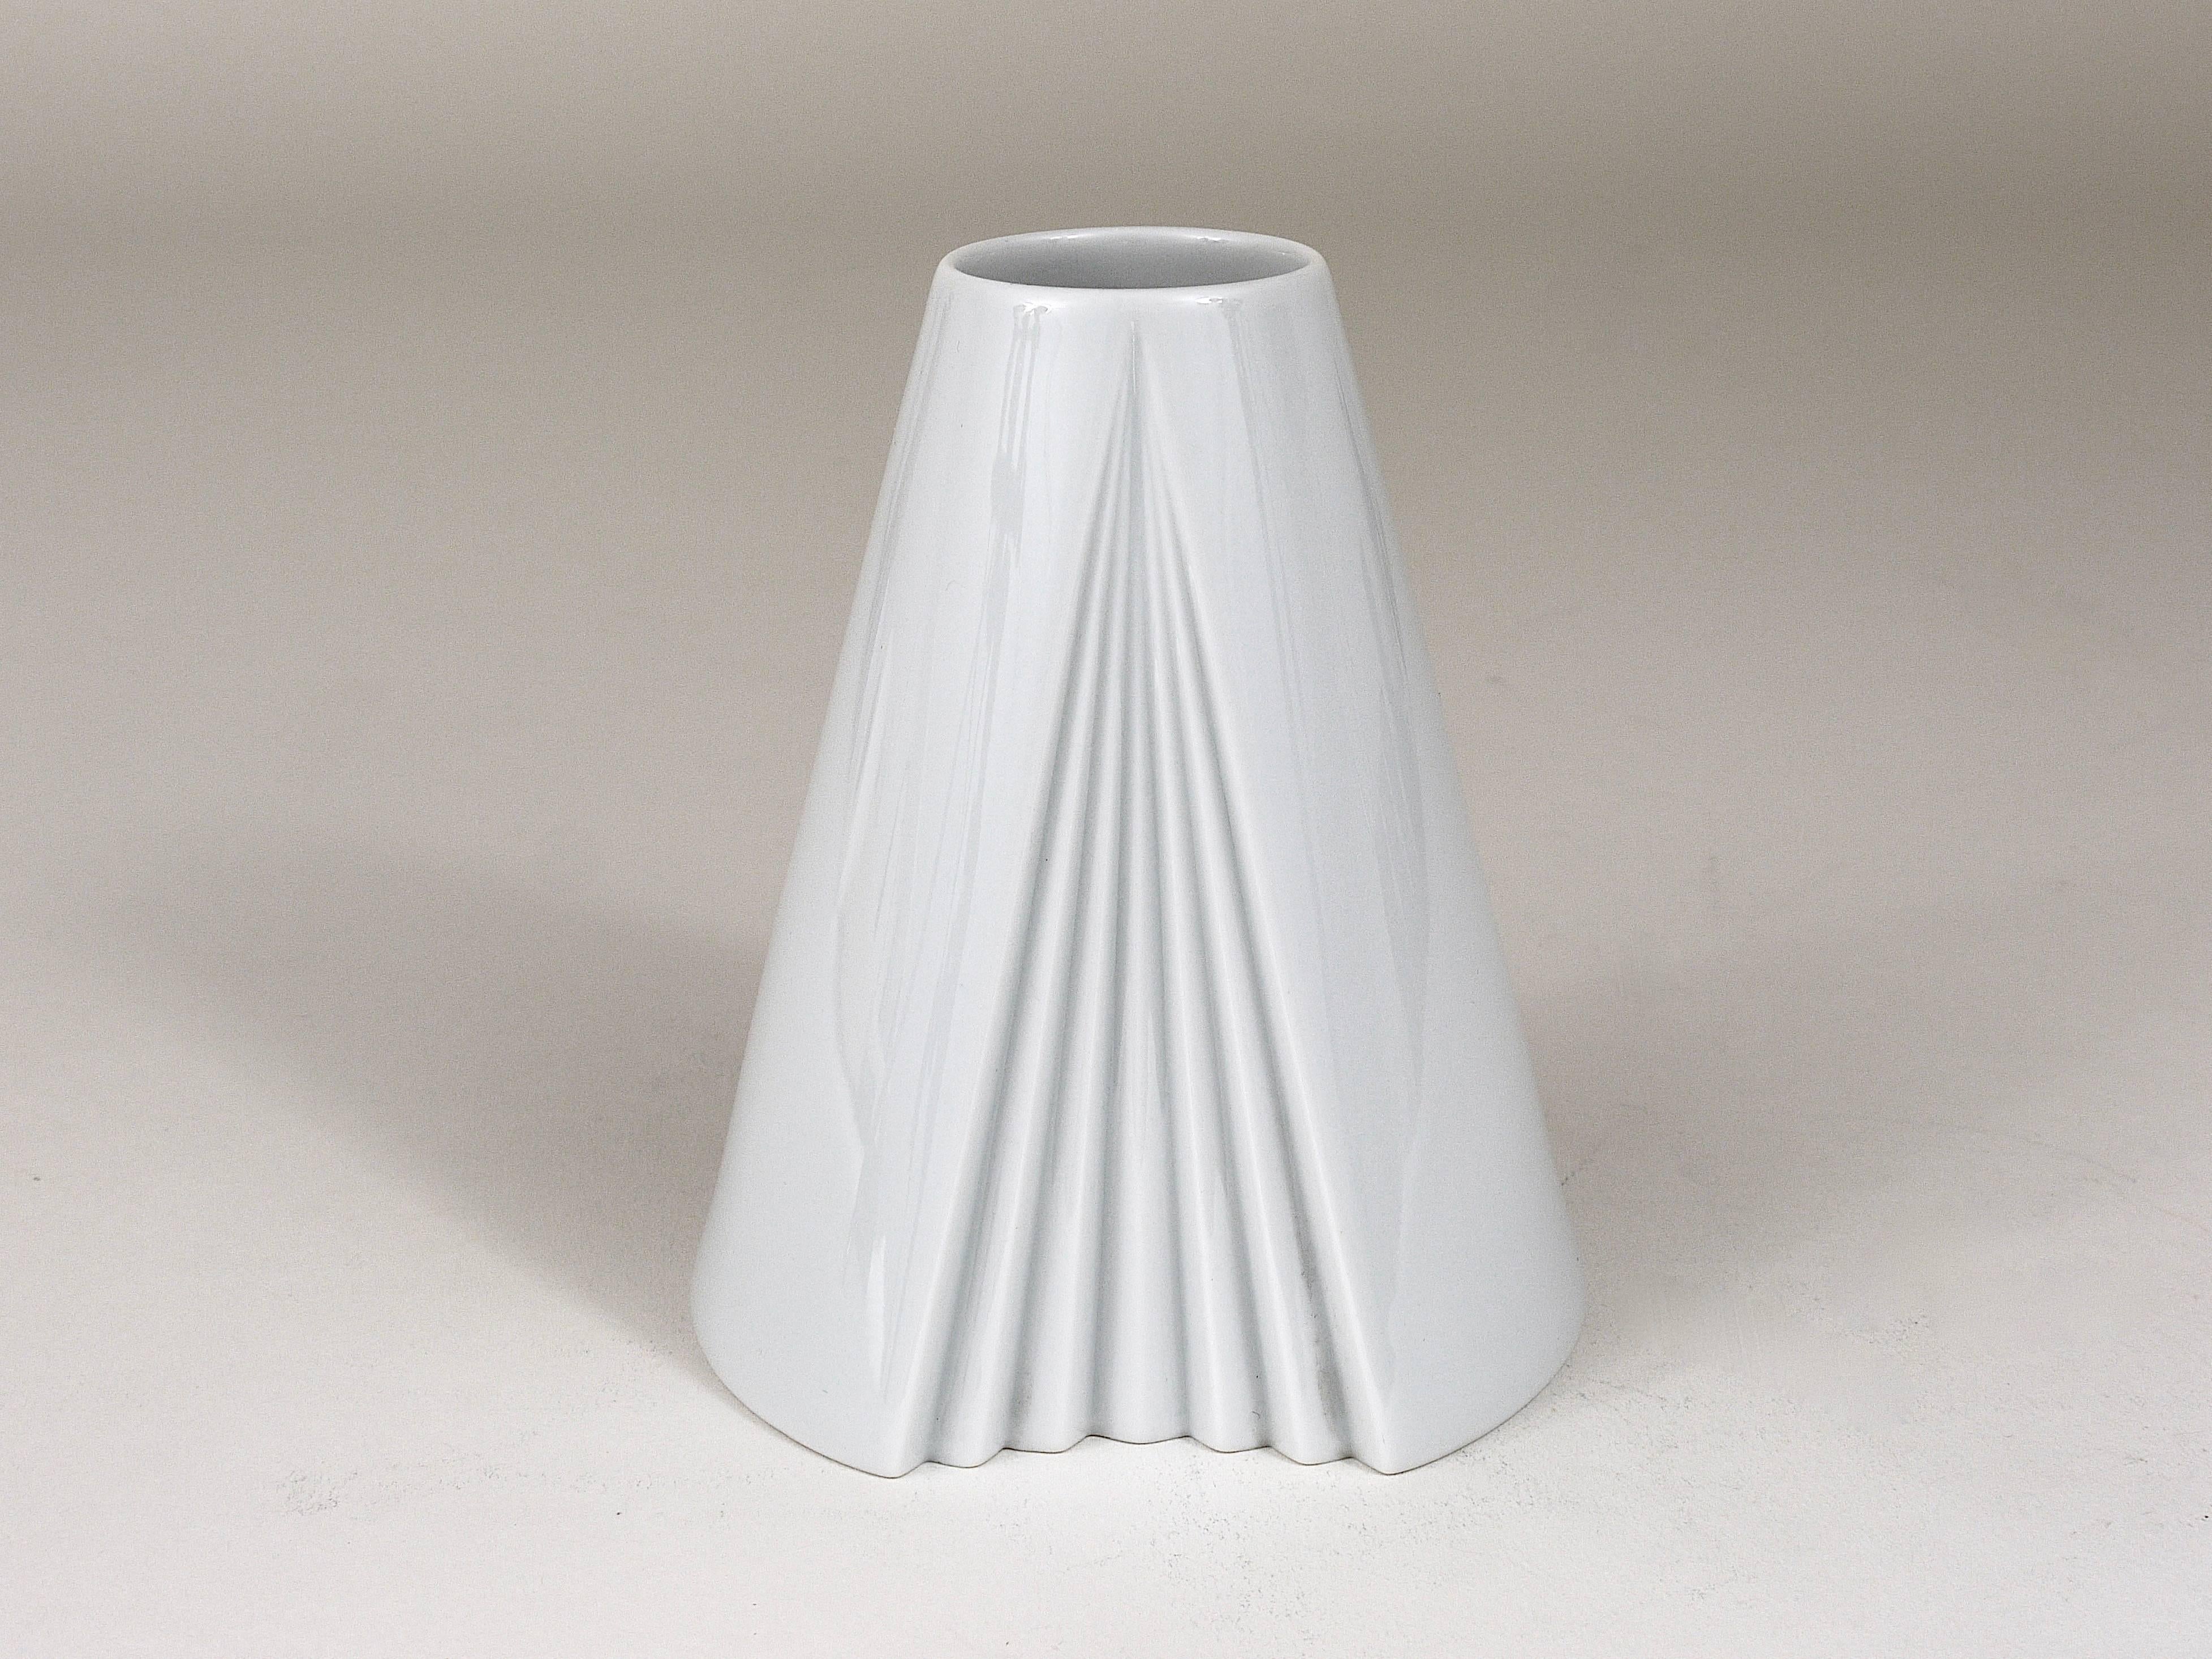 Un beau vase conique en porcelaine blanche entièrement émaillée Plissee des années 1980, conçu par Ambrogio Pozzi en 1985, exécuté par Rosenthal, Allemagne. En parfait état.